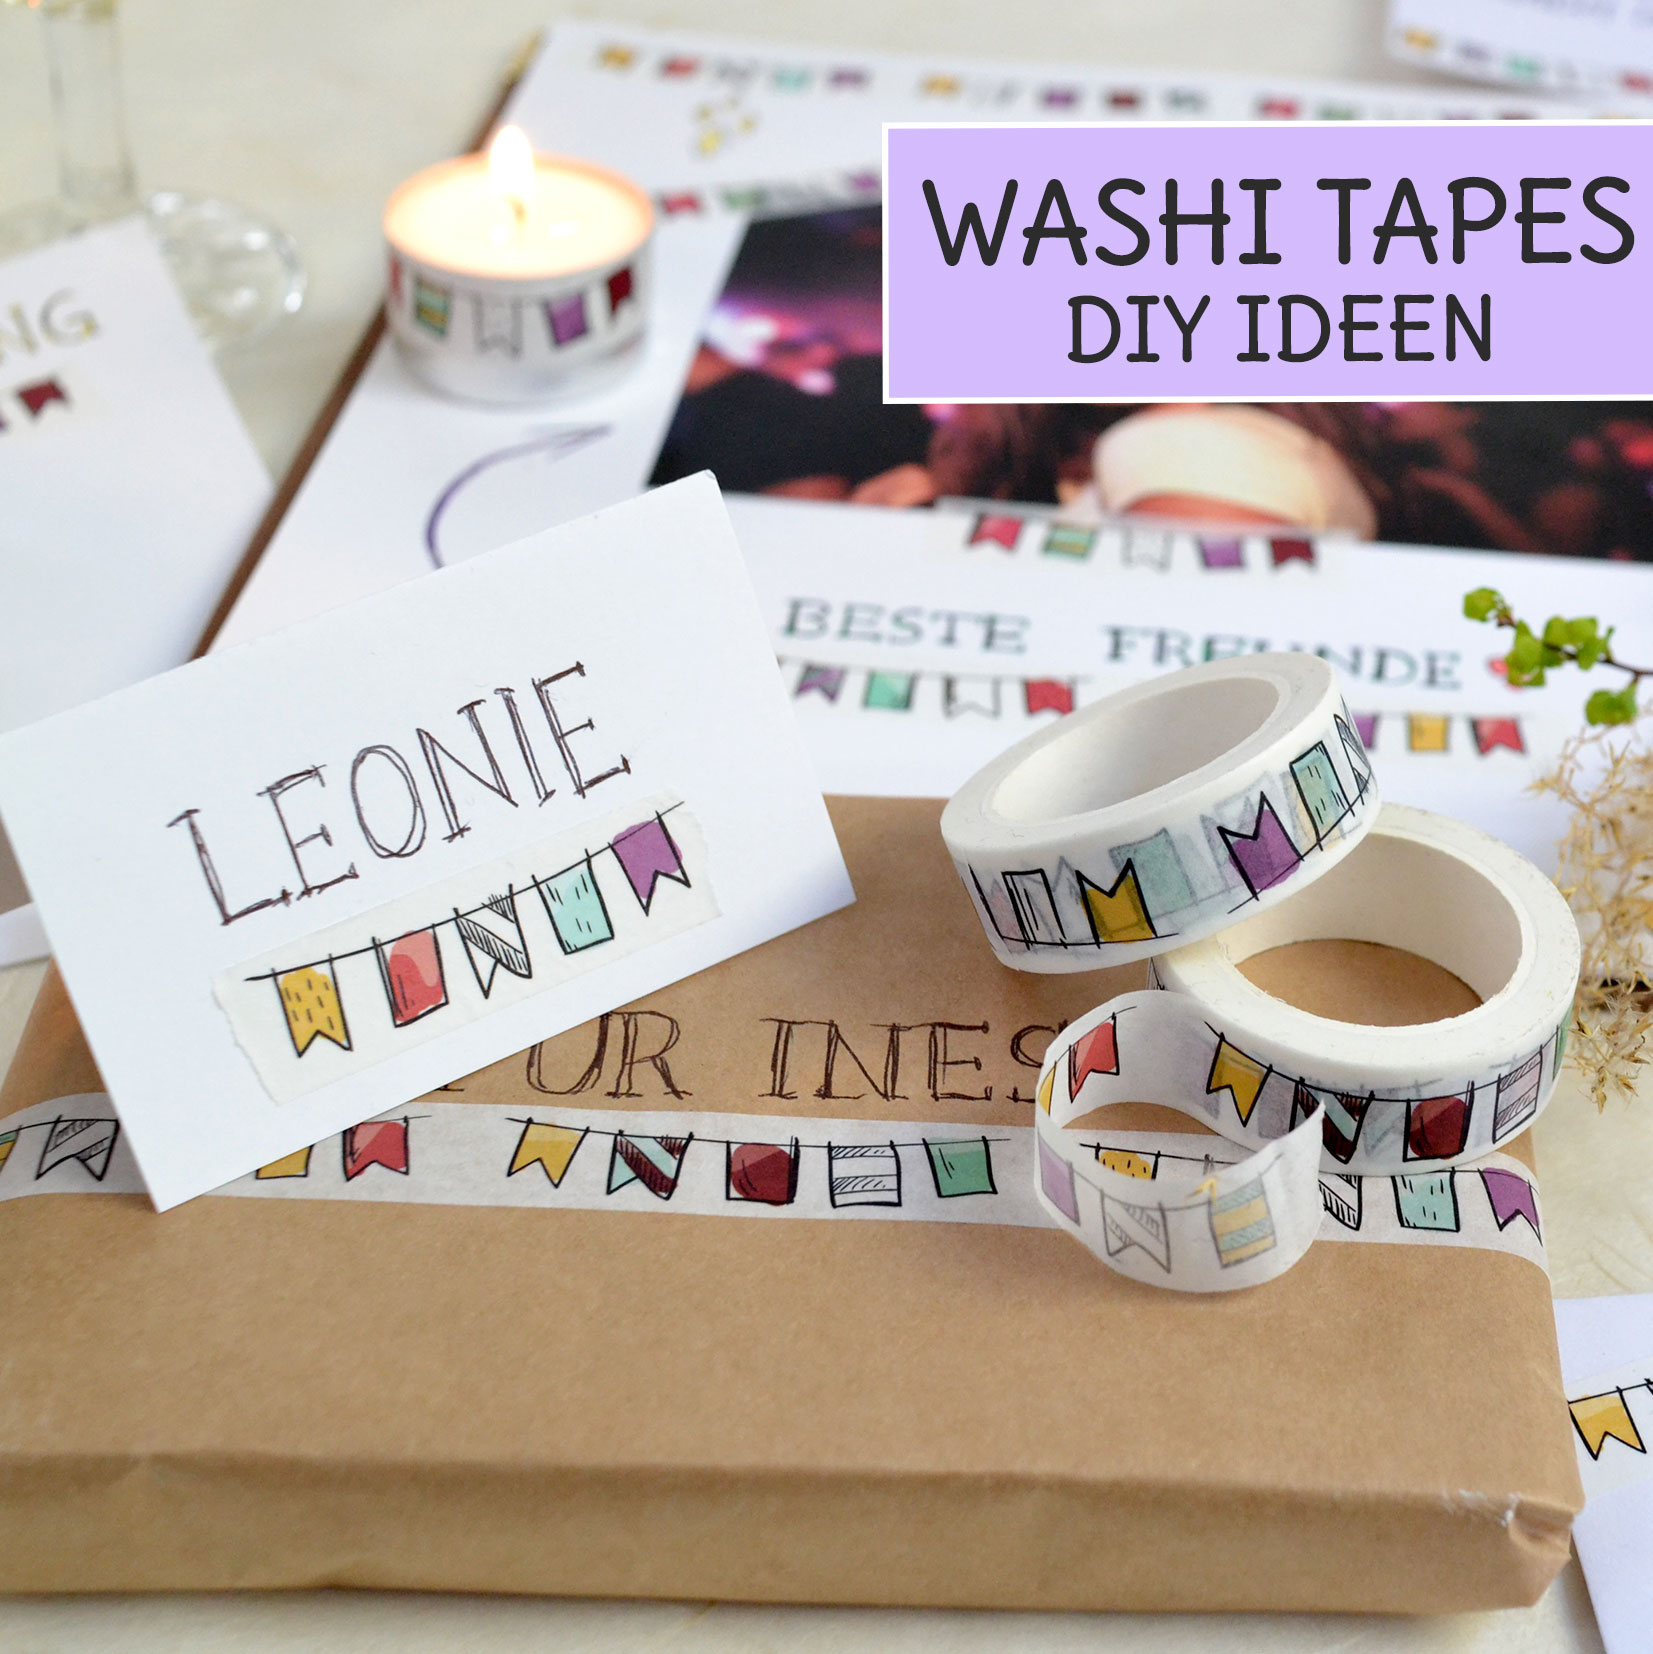 AUFODARA 12er Washi Tape Set Unterschiedliche Mustern Klebeband DIY Deko 